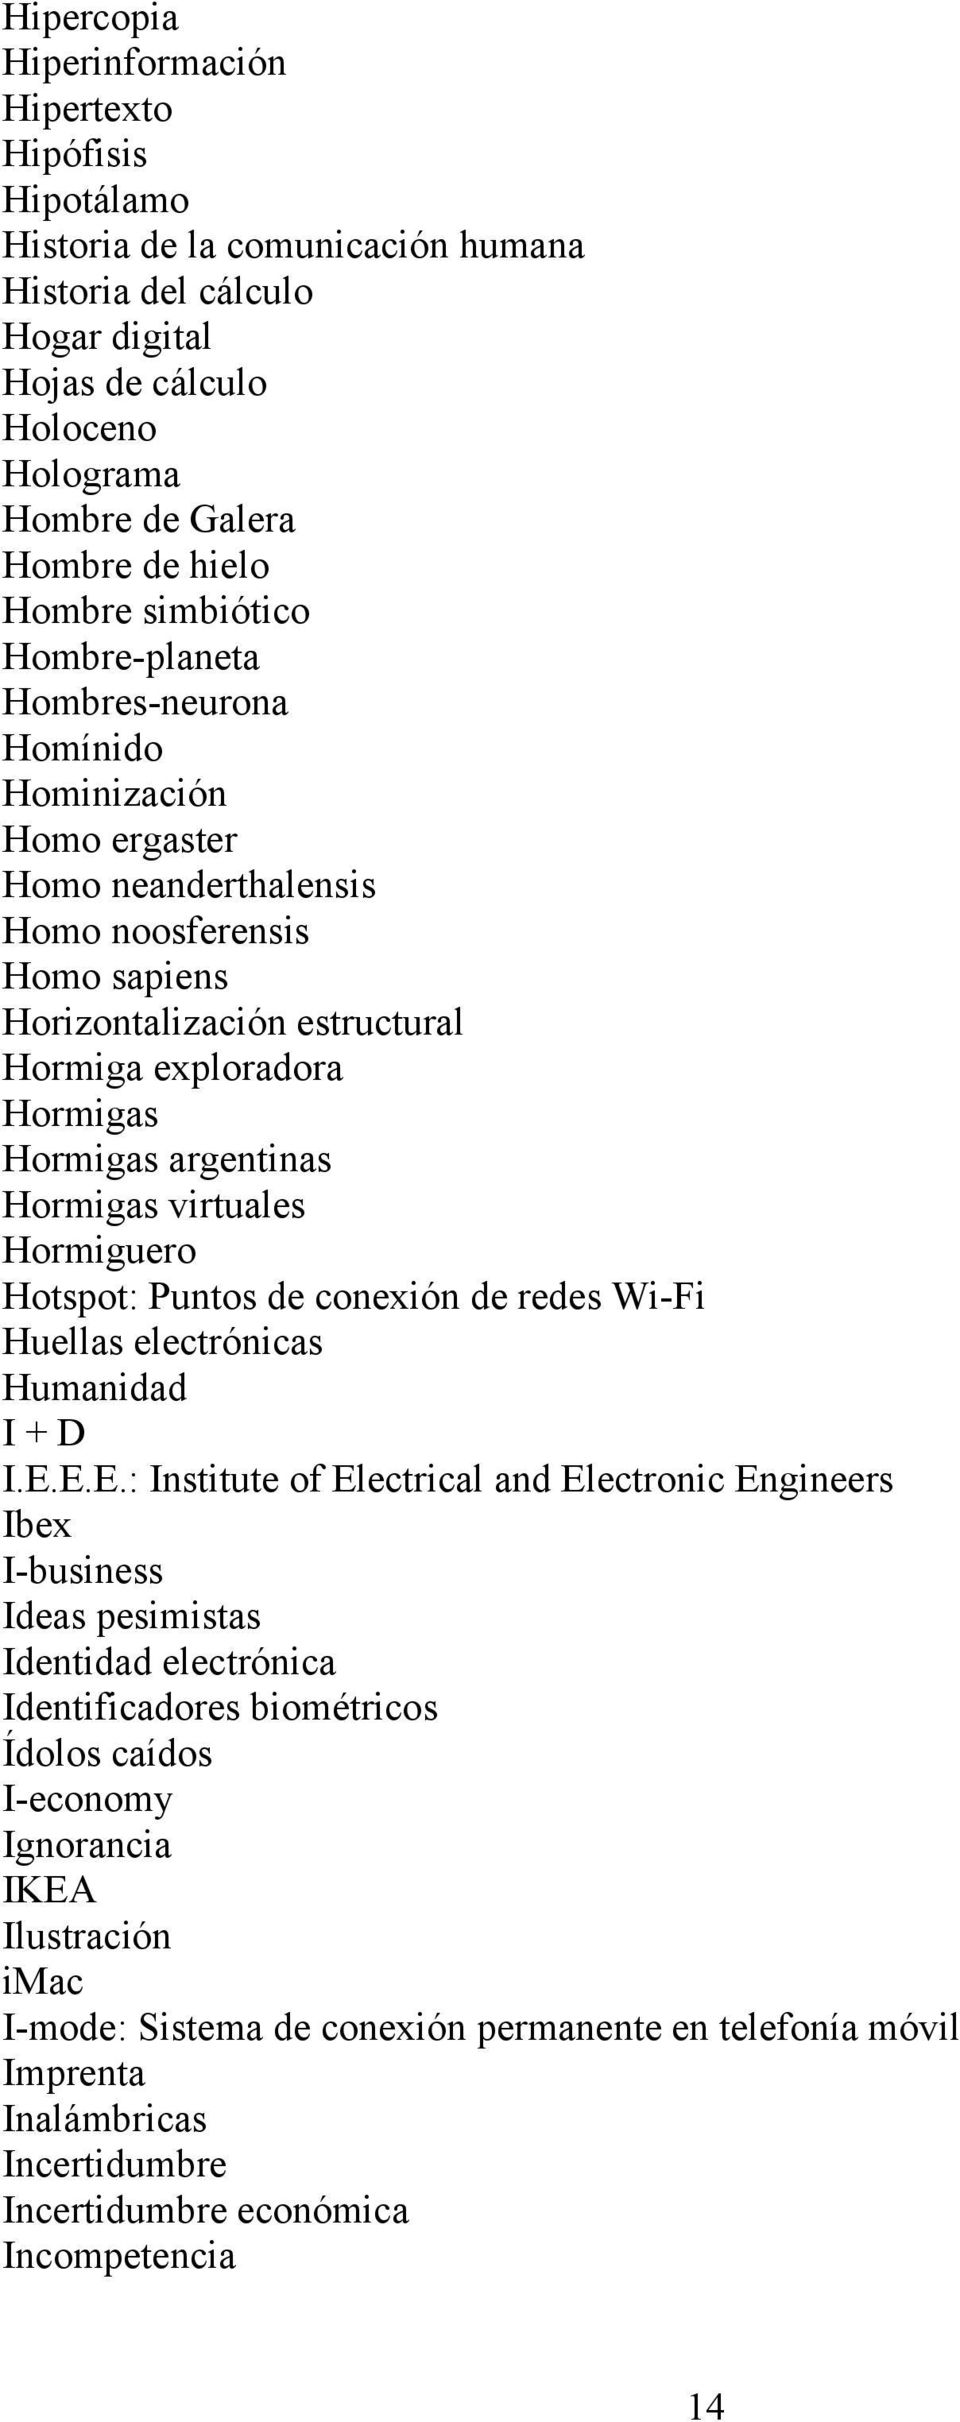 Hormigas argentinas Hormigas virtuales Hormiguero Hotspot: Puntos de conexión de redes Wi-Fi Huellas electrónicas Humanidad I + D I.E.